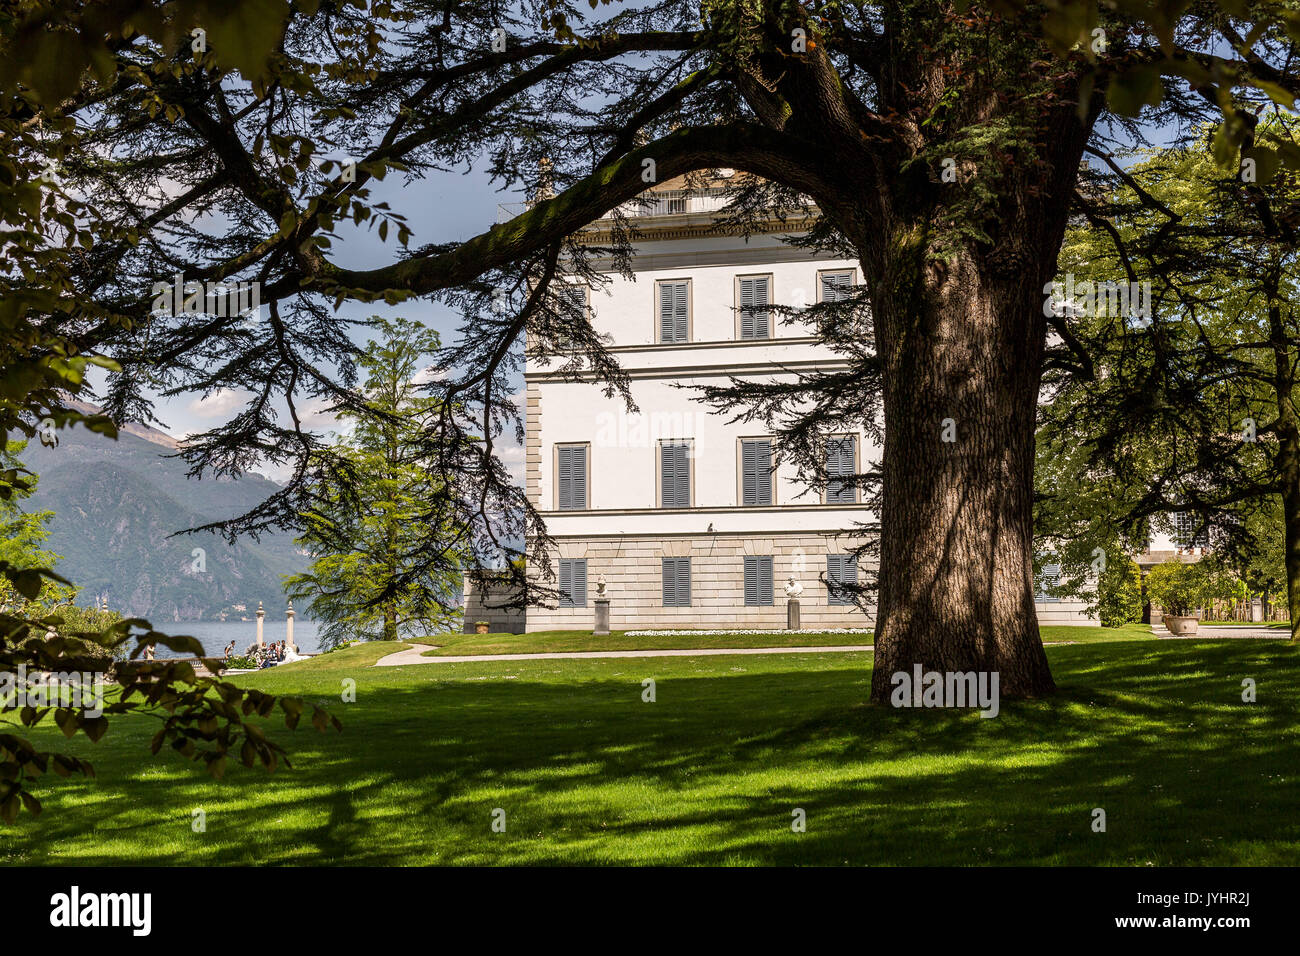 The gardens of Villa Melzi d'Eril, Lake Como, Lombardy, Italy. Stock Photo